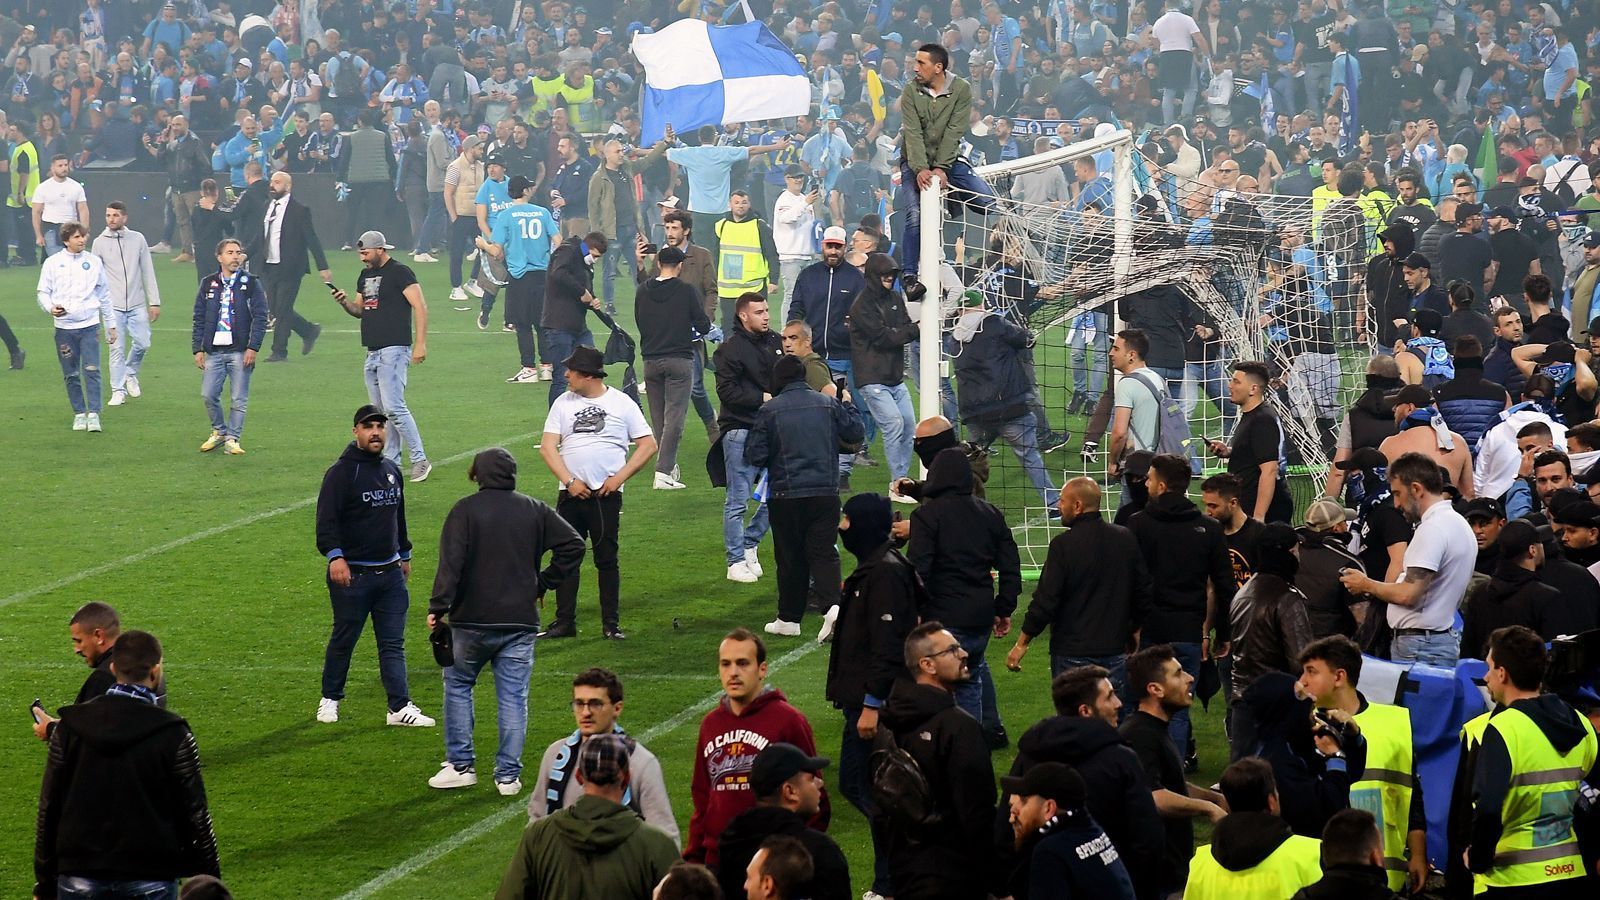 
                <strong>Überschwängliche Emotionen</strong><br>
                Nach 33 langen Jahren des Wartens ließen die Fans in Udine ihrer Freude auf ganz unterschiedlichen Weise freien Lauf. 
              